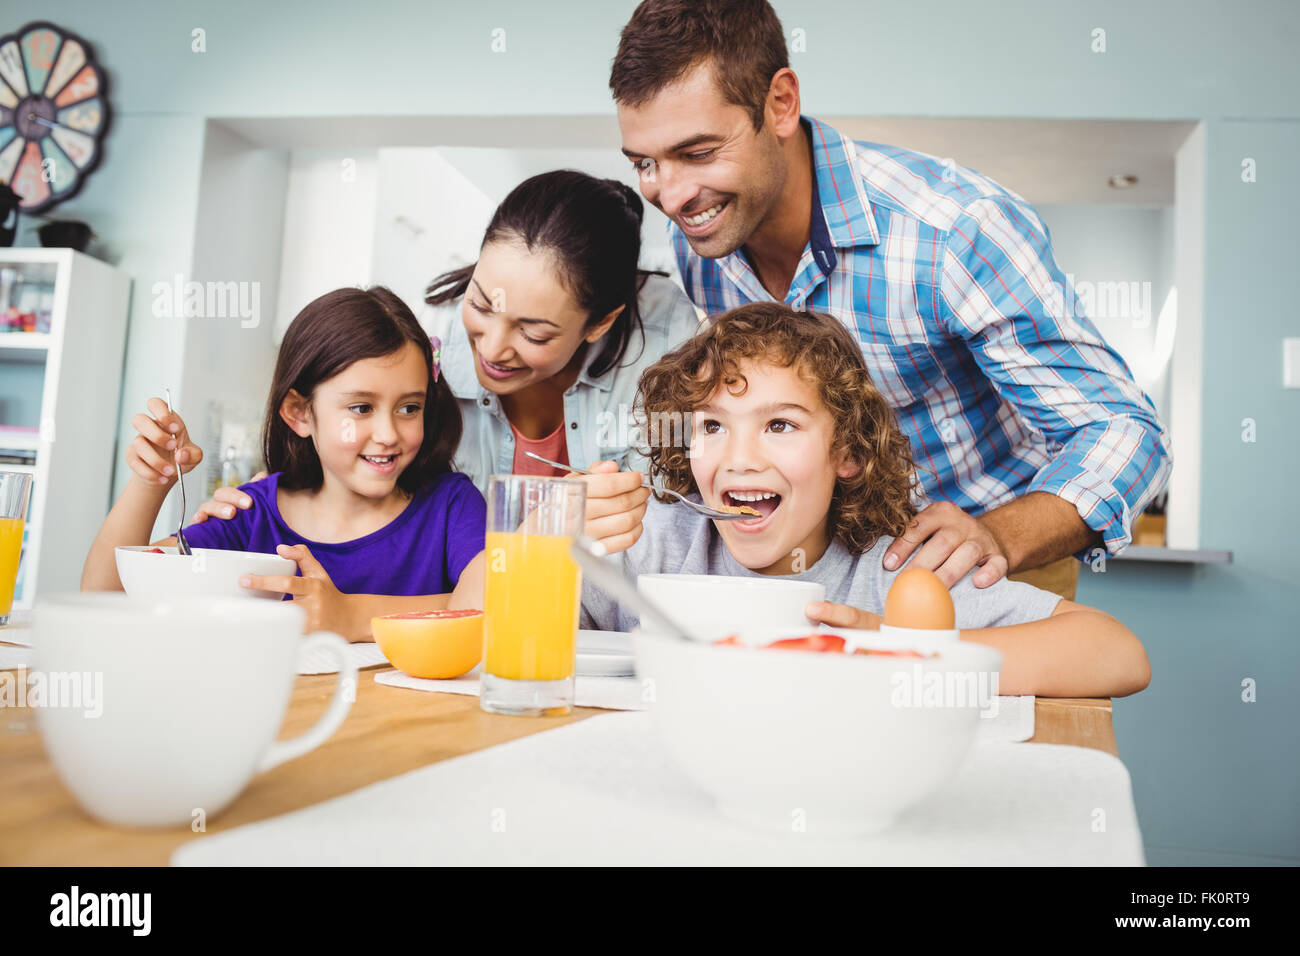 Fröhlicher Mensch und Frau mit den Kindern während des Frühstücks Stockfoto